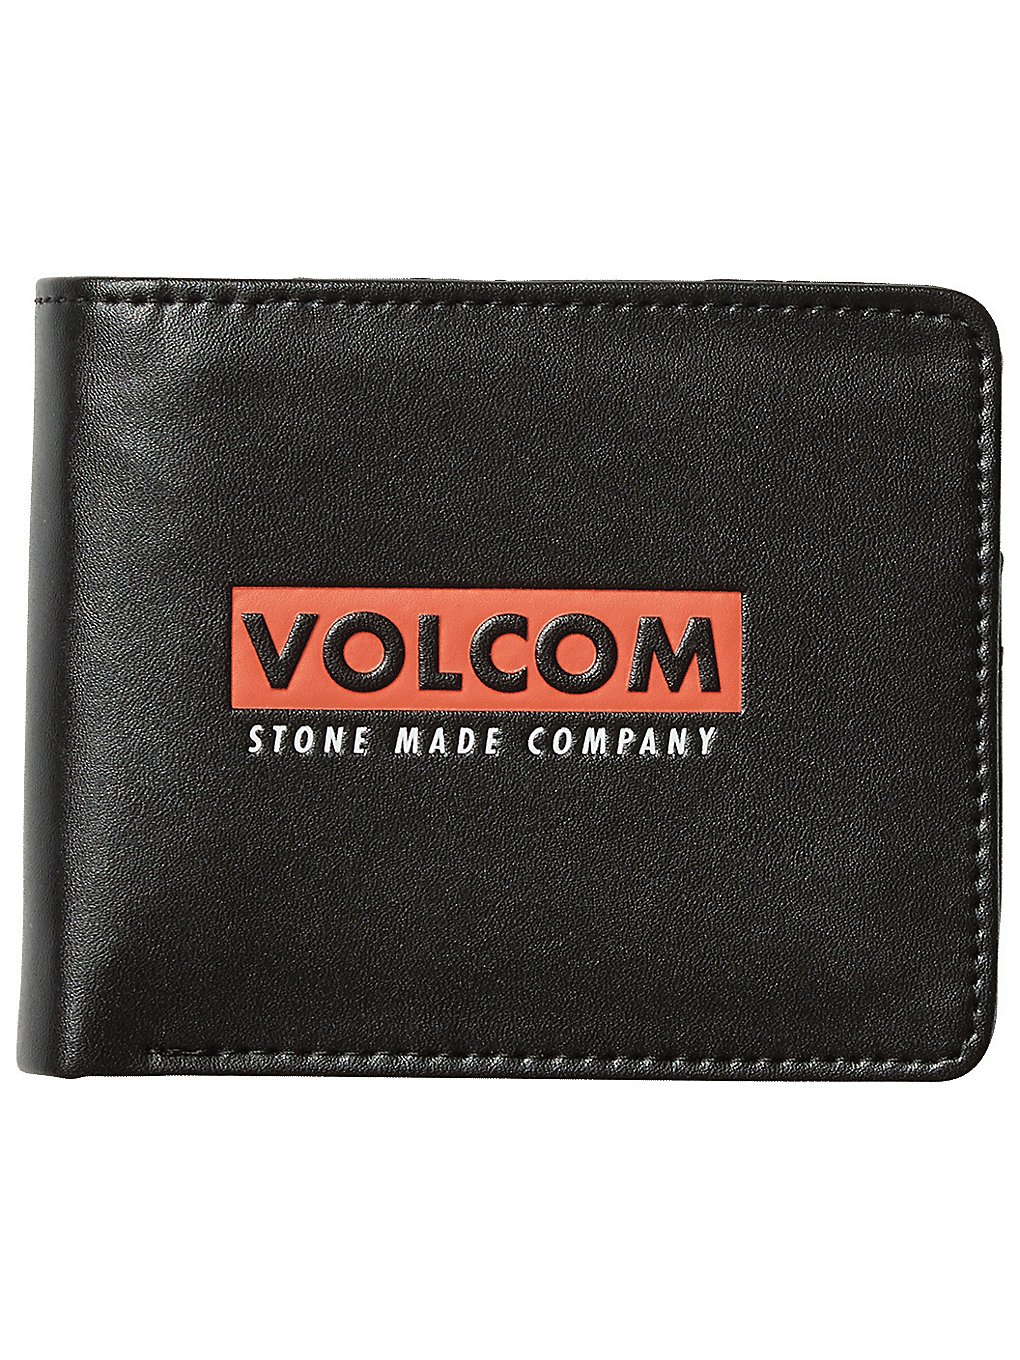 Volcom 3in1 wallet musta, volcom